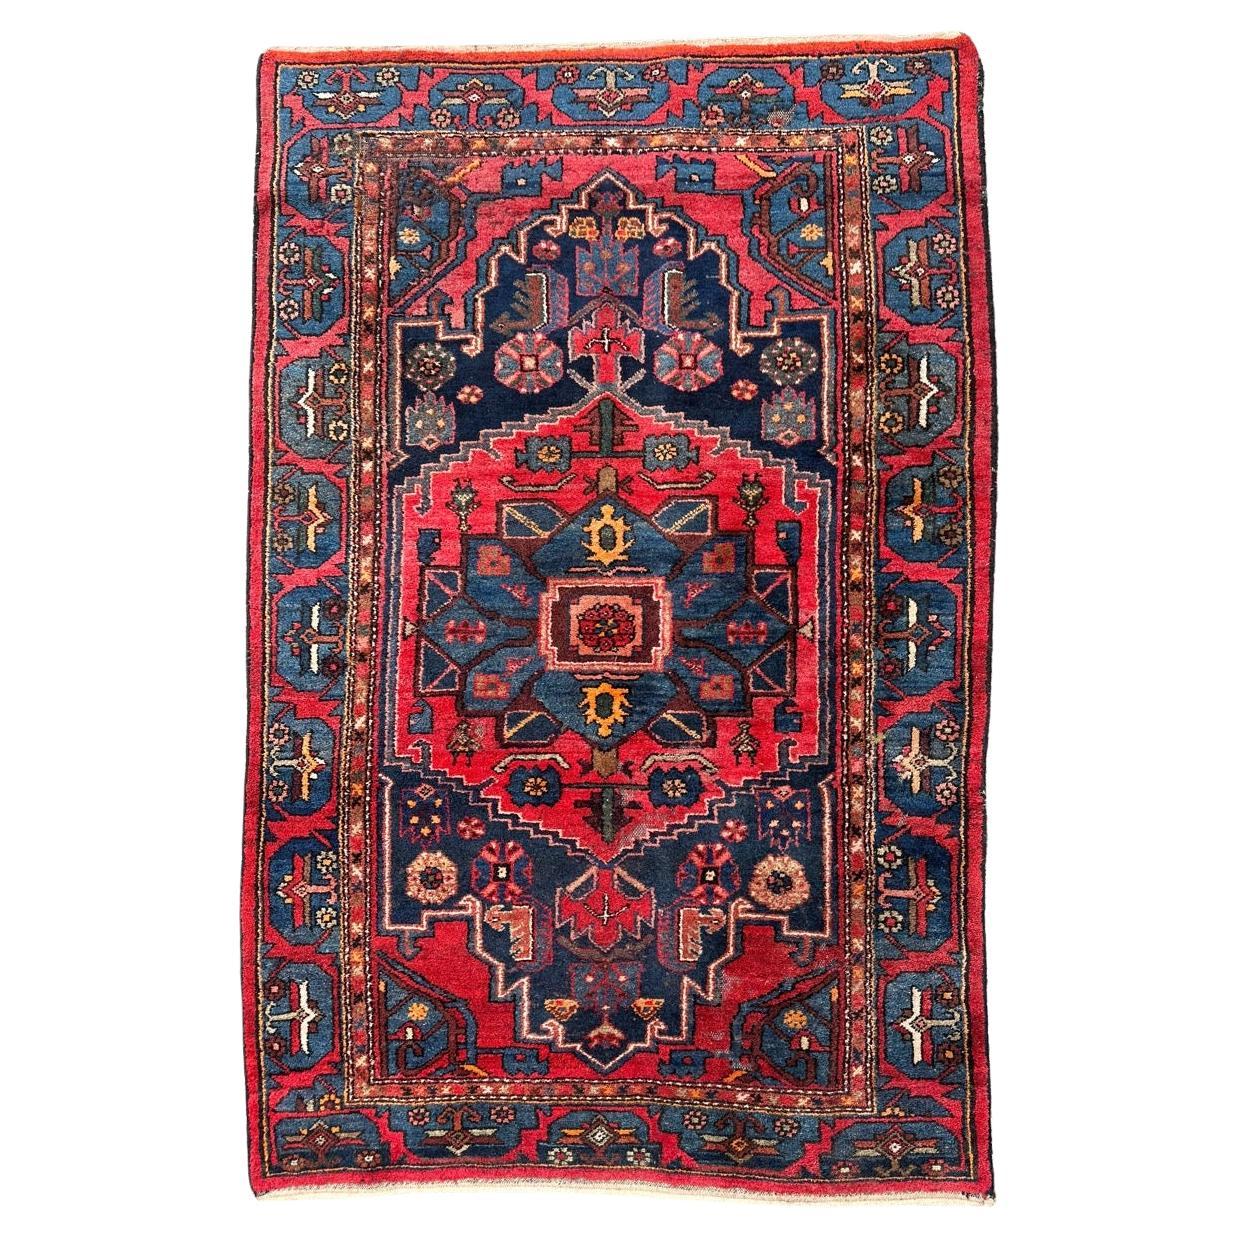 Bobyrug’s nice vintage Hamadan rug For Sale